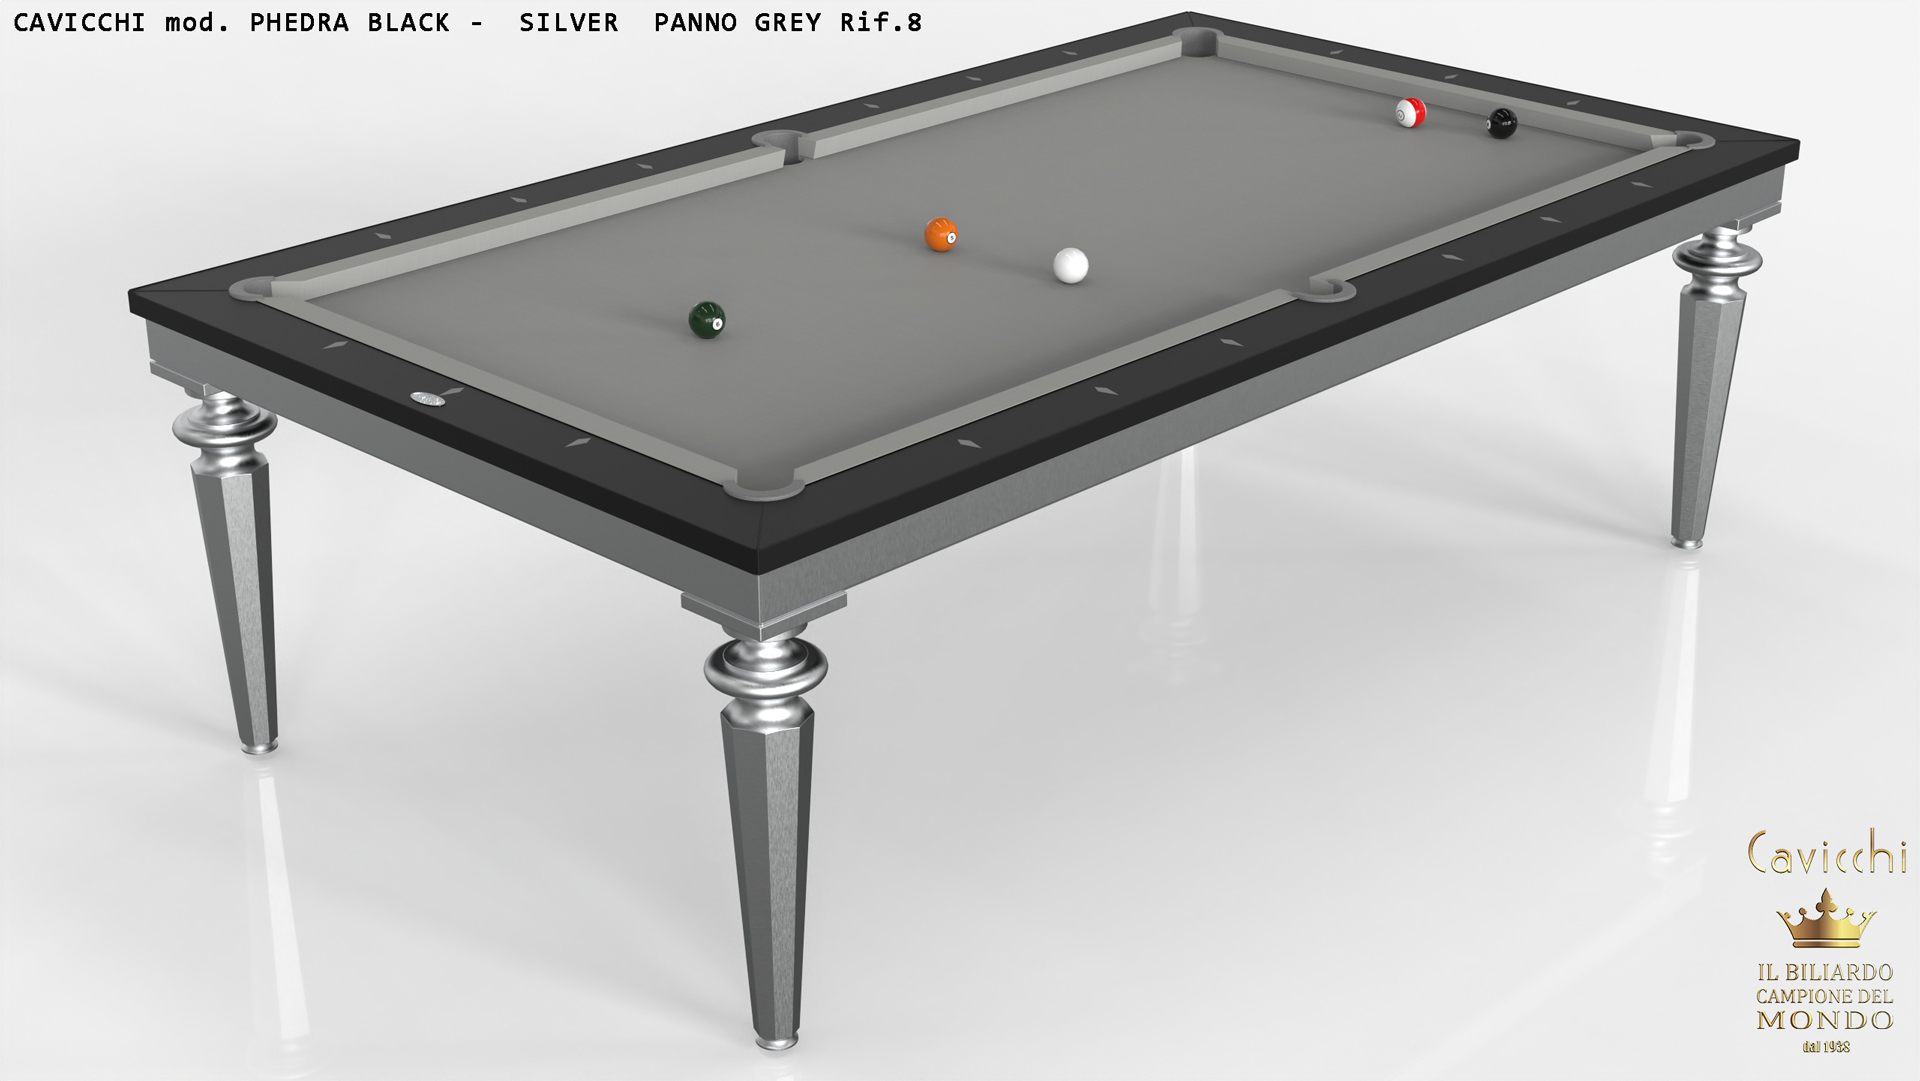 Cavicchi Phedra White - Black  Pool Table 12